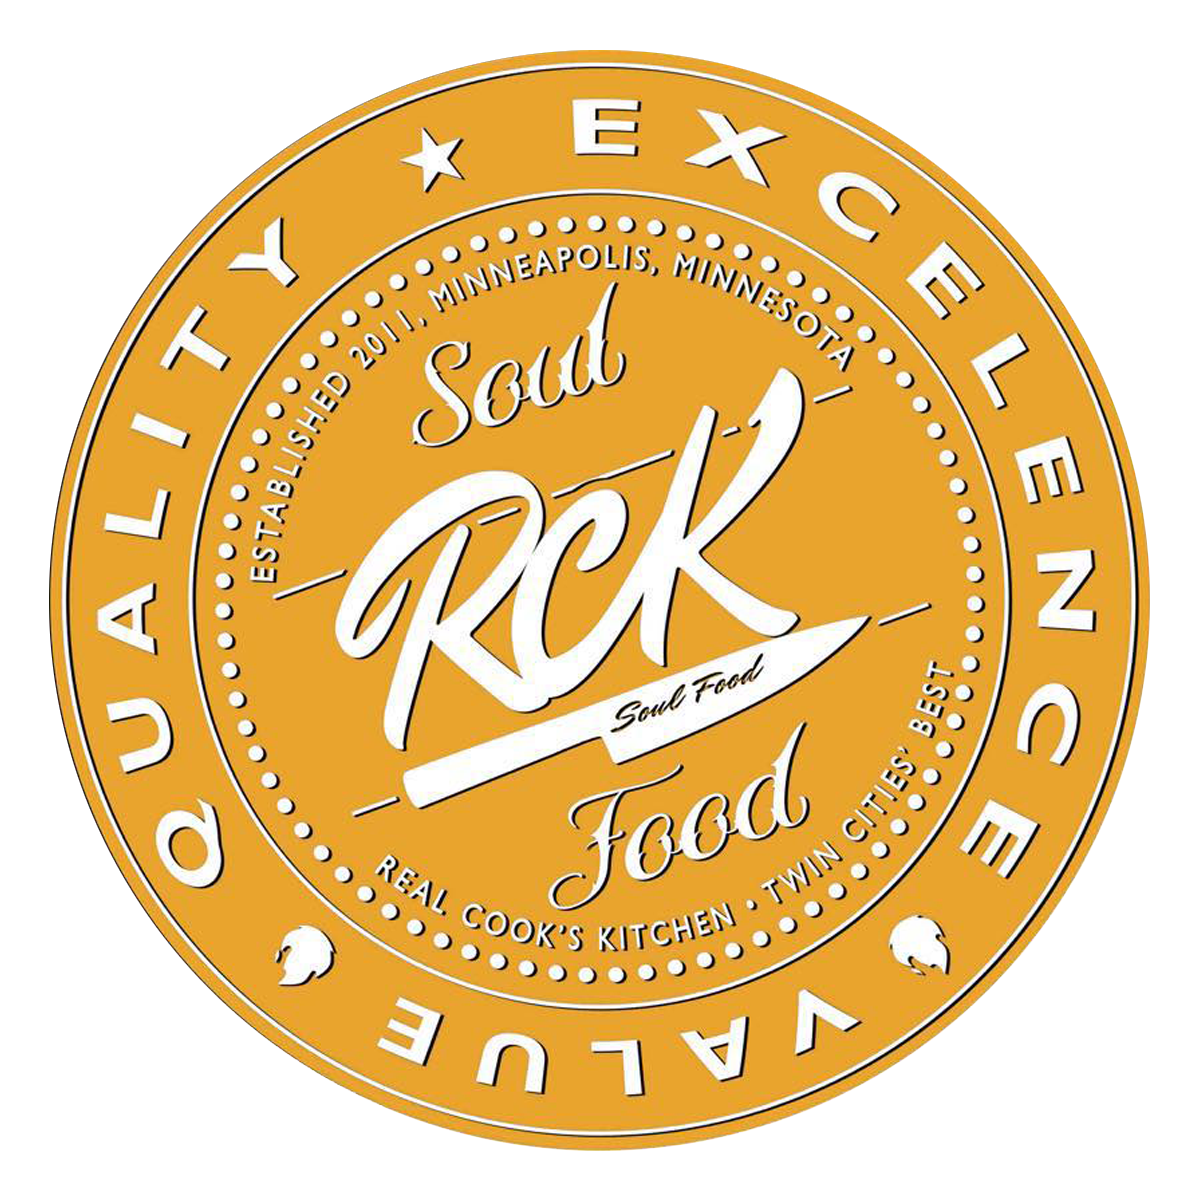 RCK Soul Food